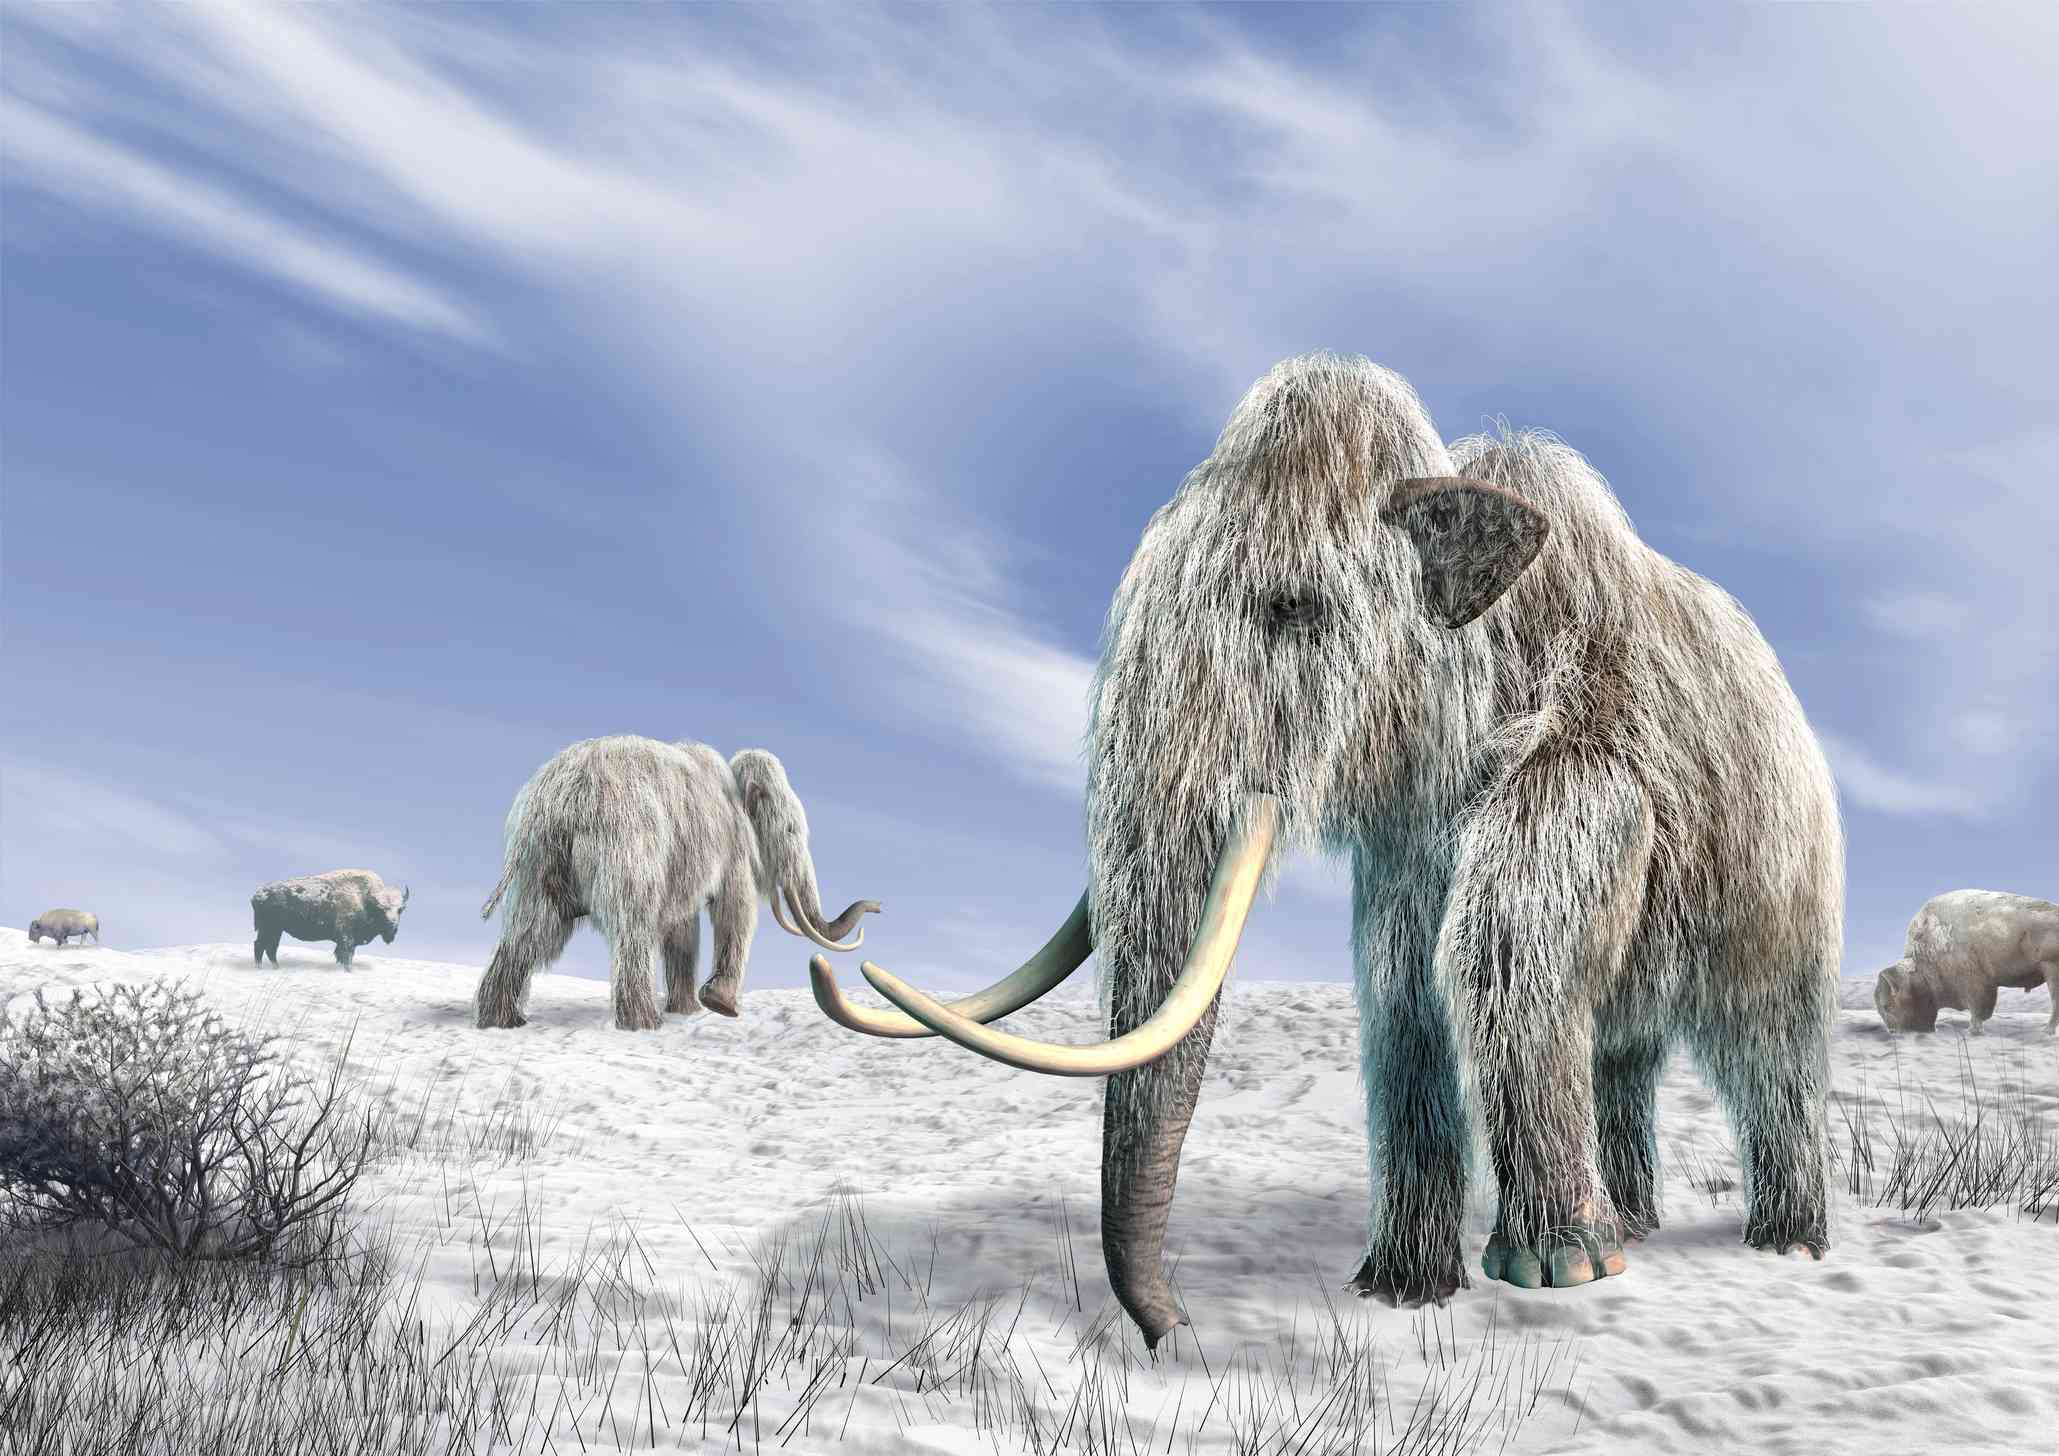 obra de arte de mamuts lanudos caminando por la nieve con largos colmillos y pelaje helado